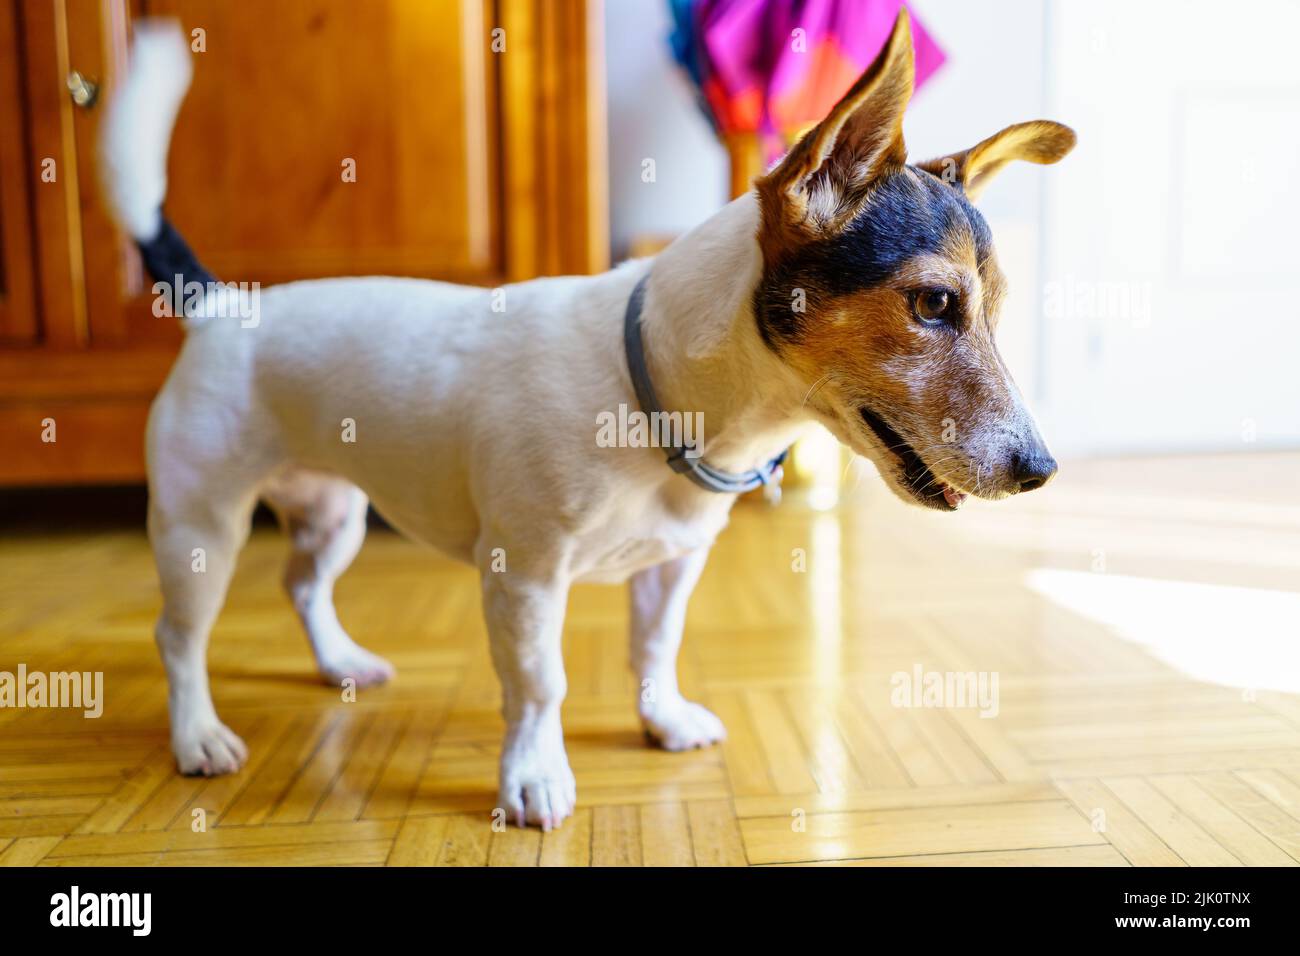 Jack russell chien terrier jouant et regardant attentivement pour recevoir une commande. Madrid. Banque D'Images